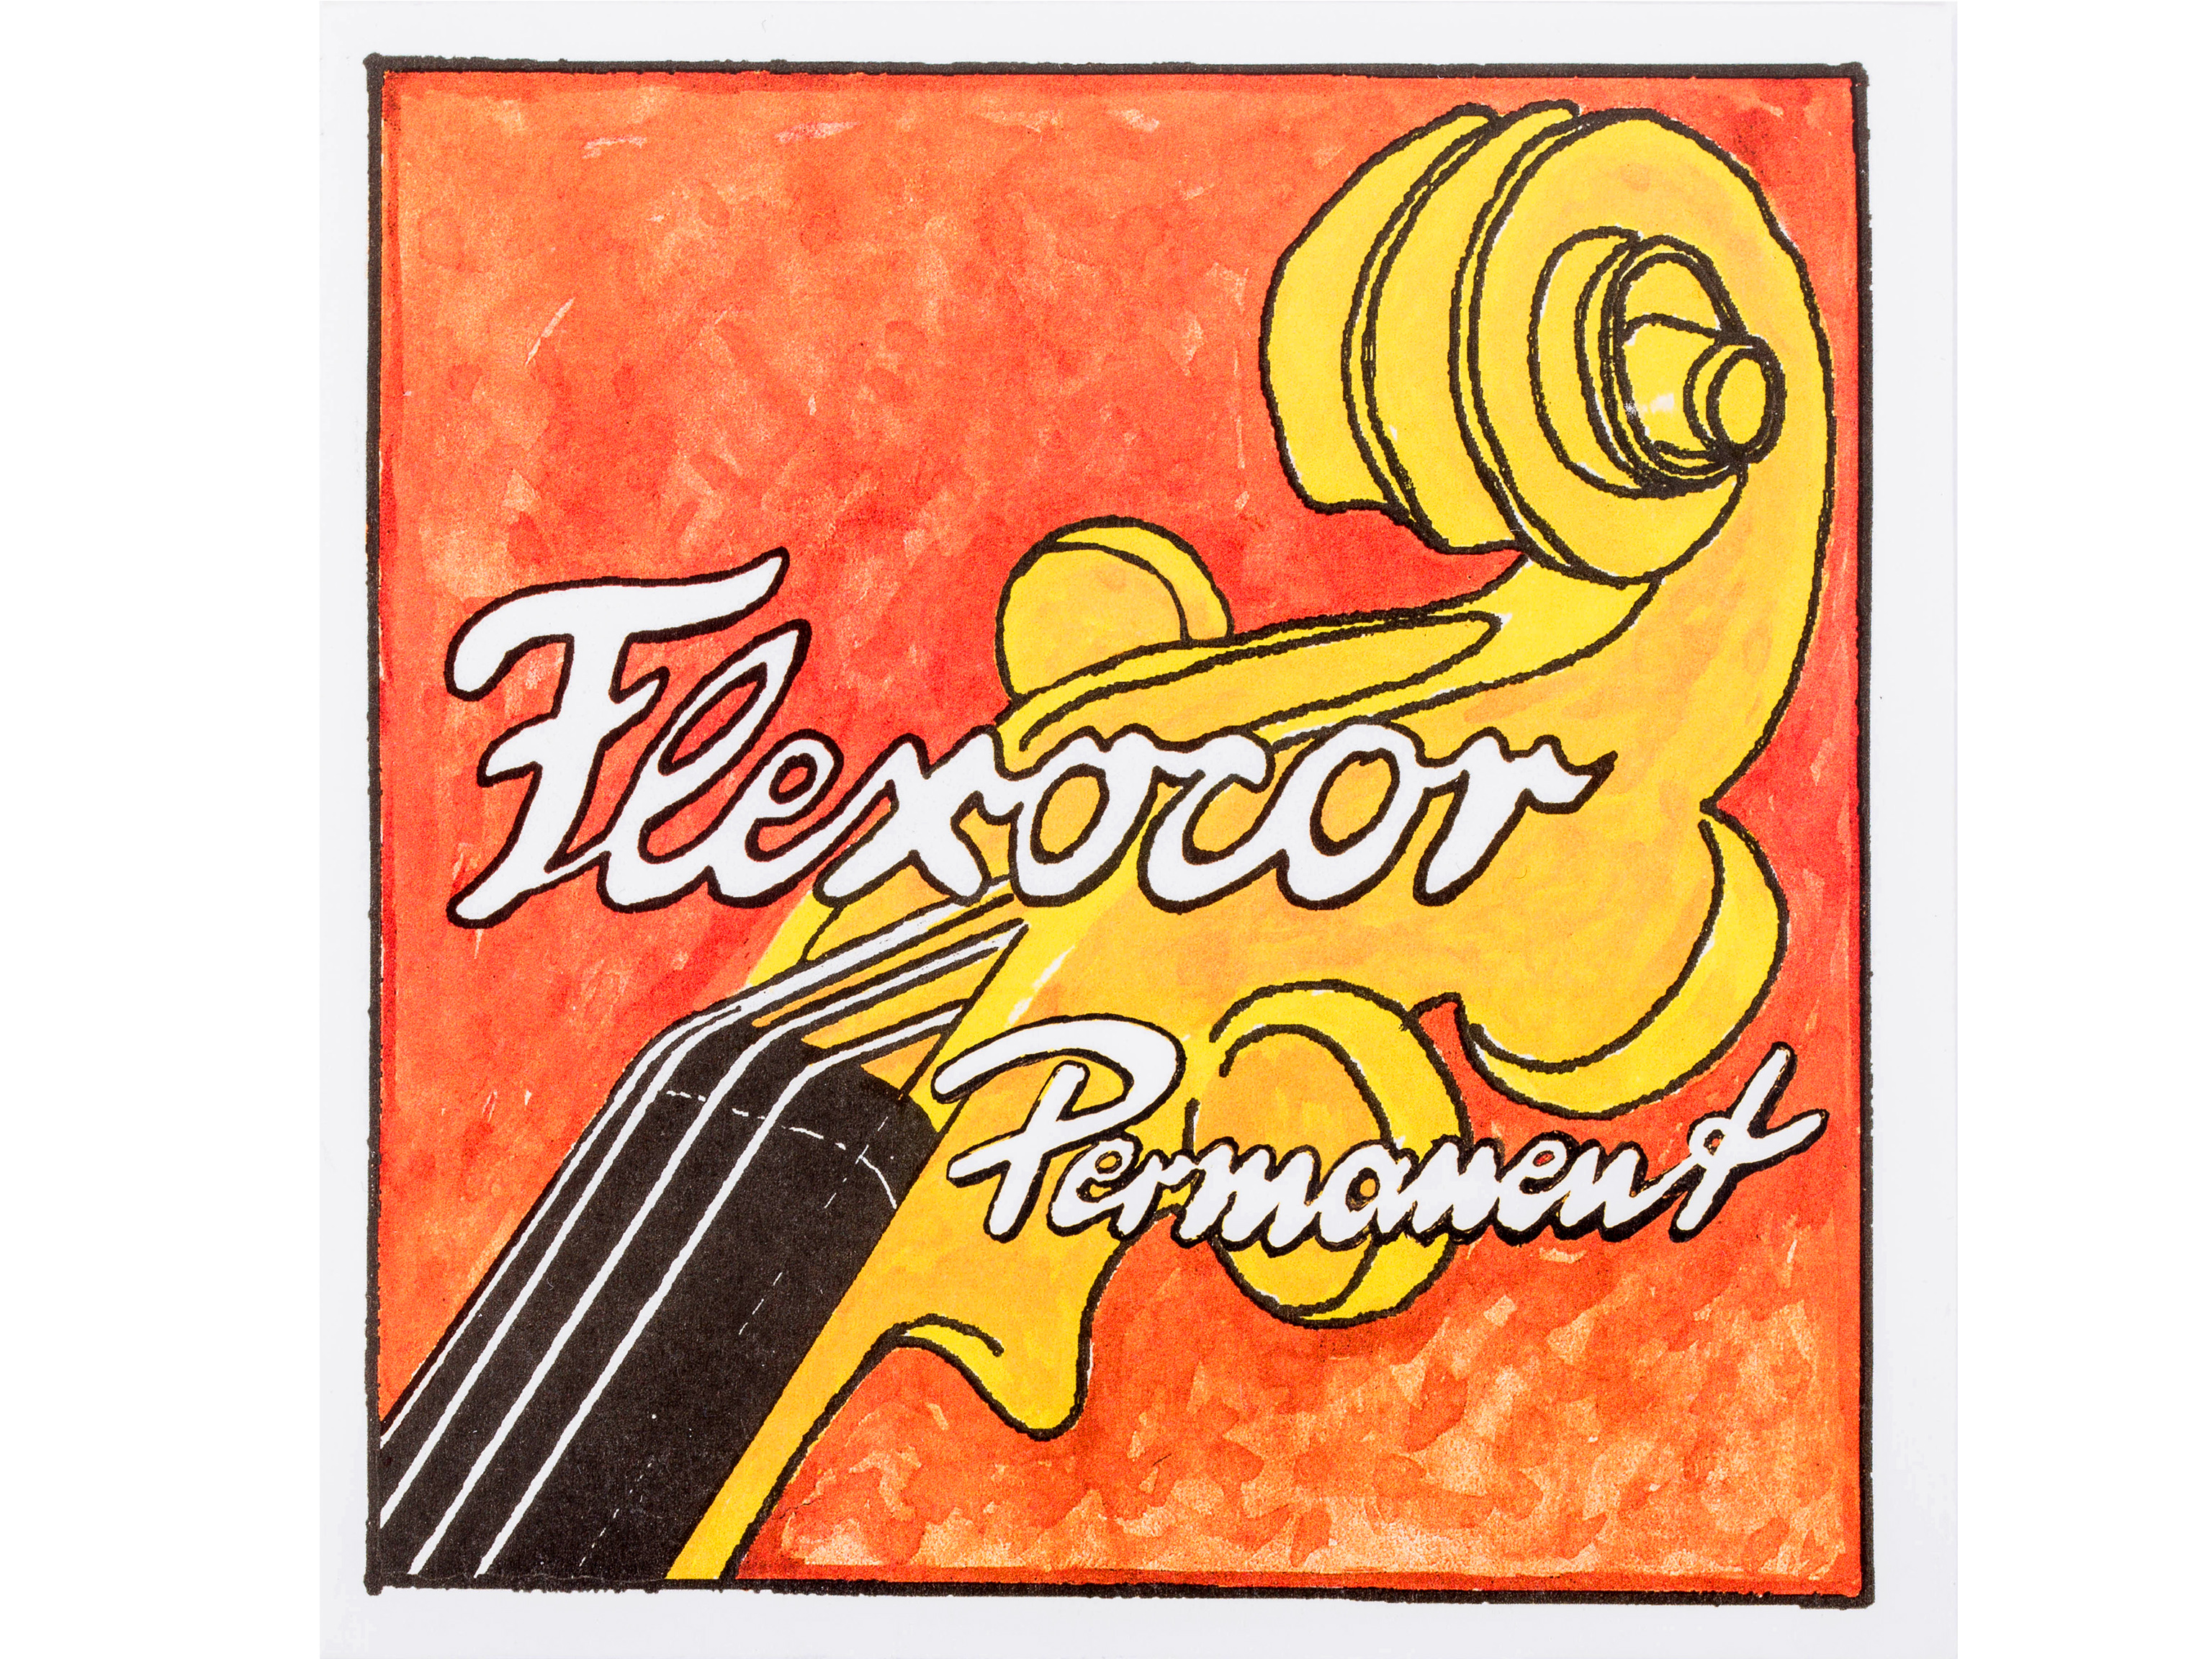 Pirastro 316220 a` Violinsaite 4/4 Flexocor Permanent